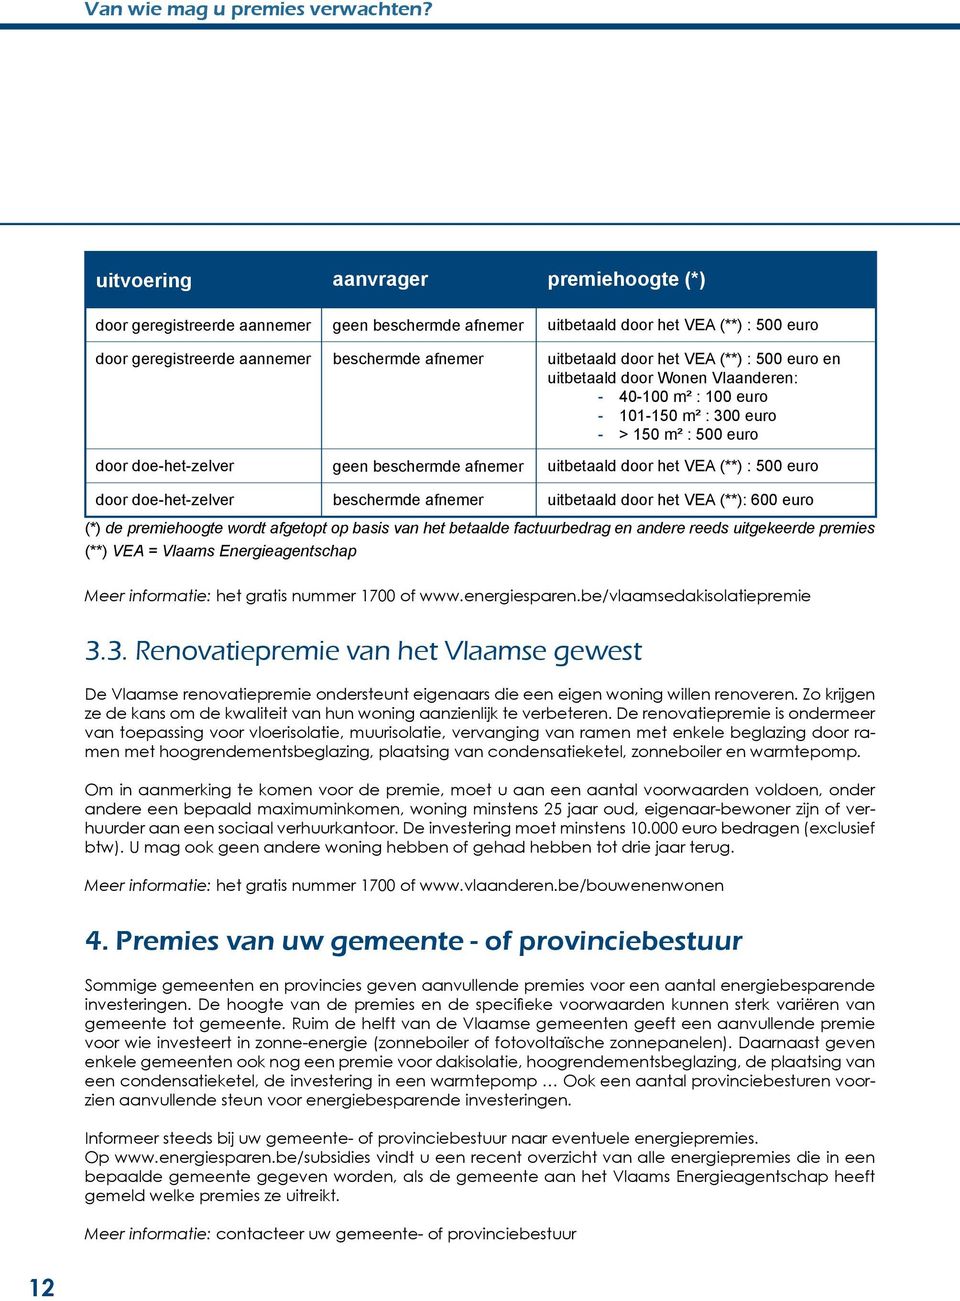 geen beschermde afnemer uitbetaald door het VEA (**) : 500 euro en uitbetaald door Wonen Vlaanderen: - 40-100 m² : 100 euro - 101-150 m² : 300 euro - > 150 m² : 500 euro uitbetaald door het VEA (**)